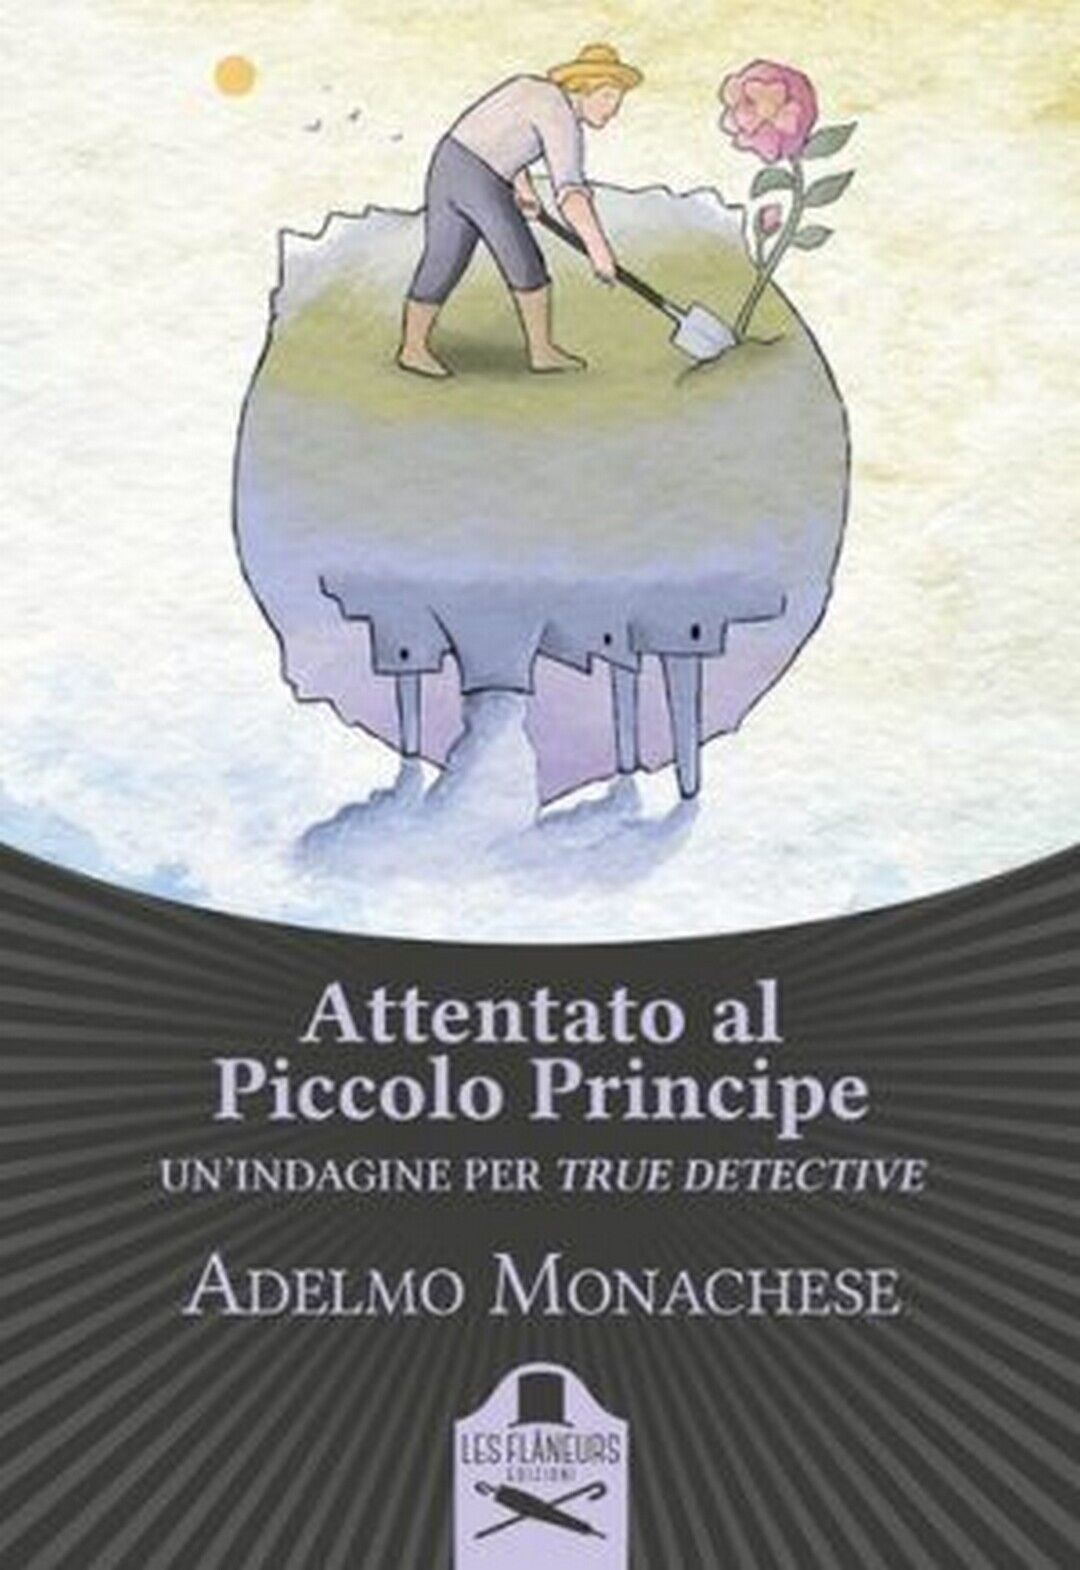 Attentato al Piccolo Principe  di Adelmo Monachese ,  Flaneurs libro usato